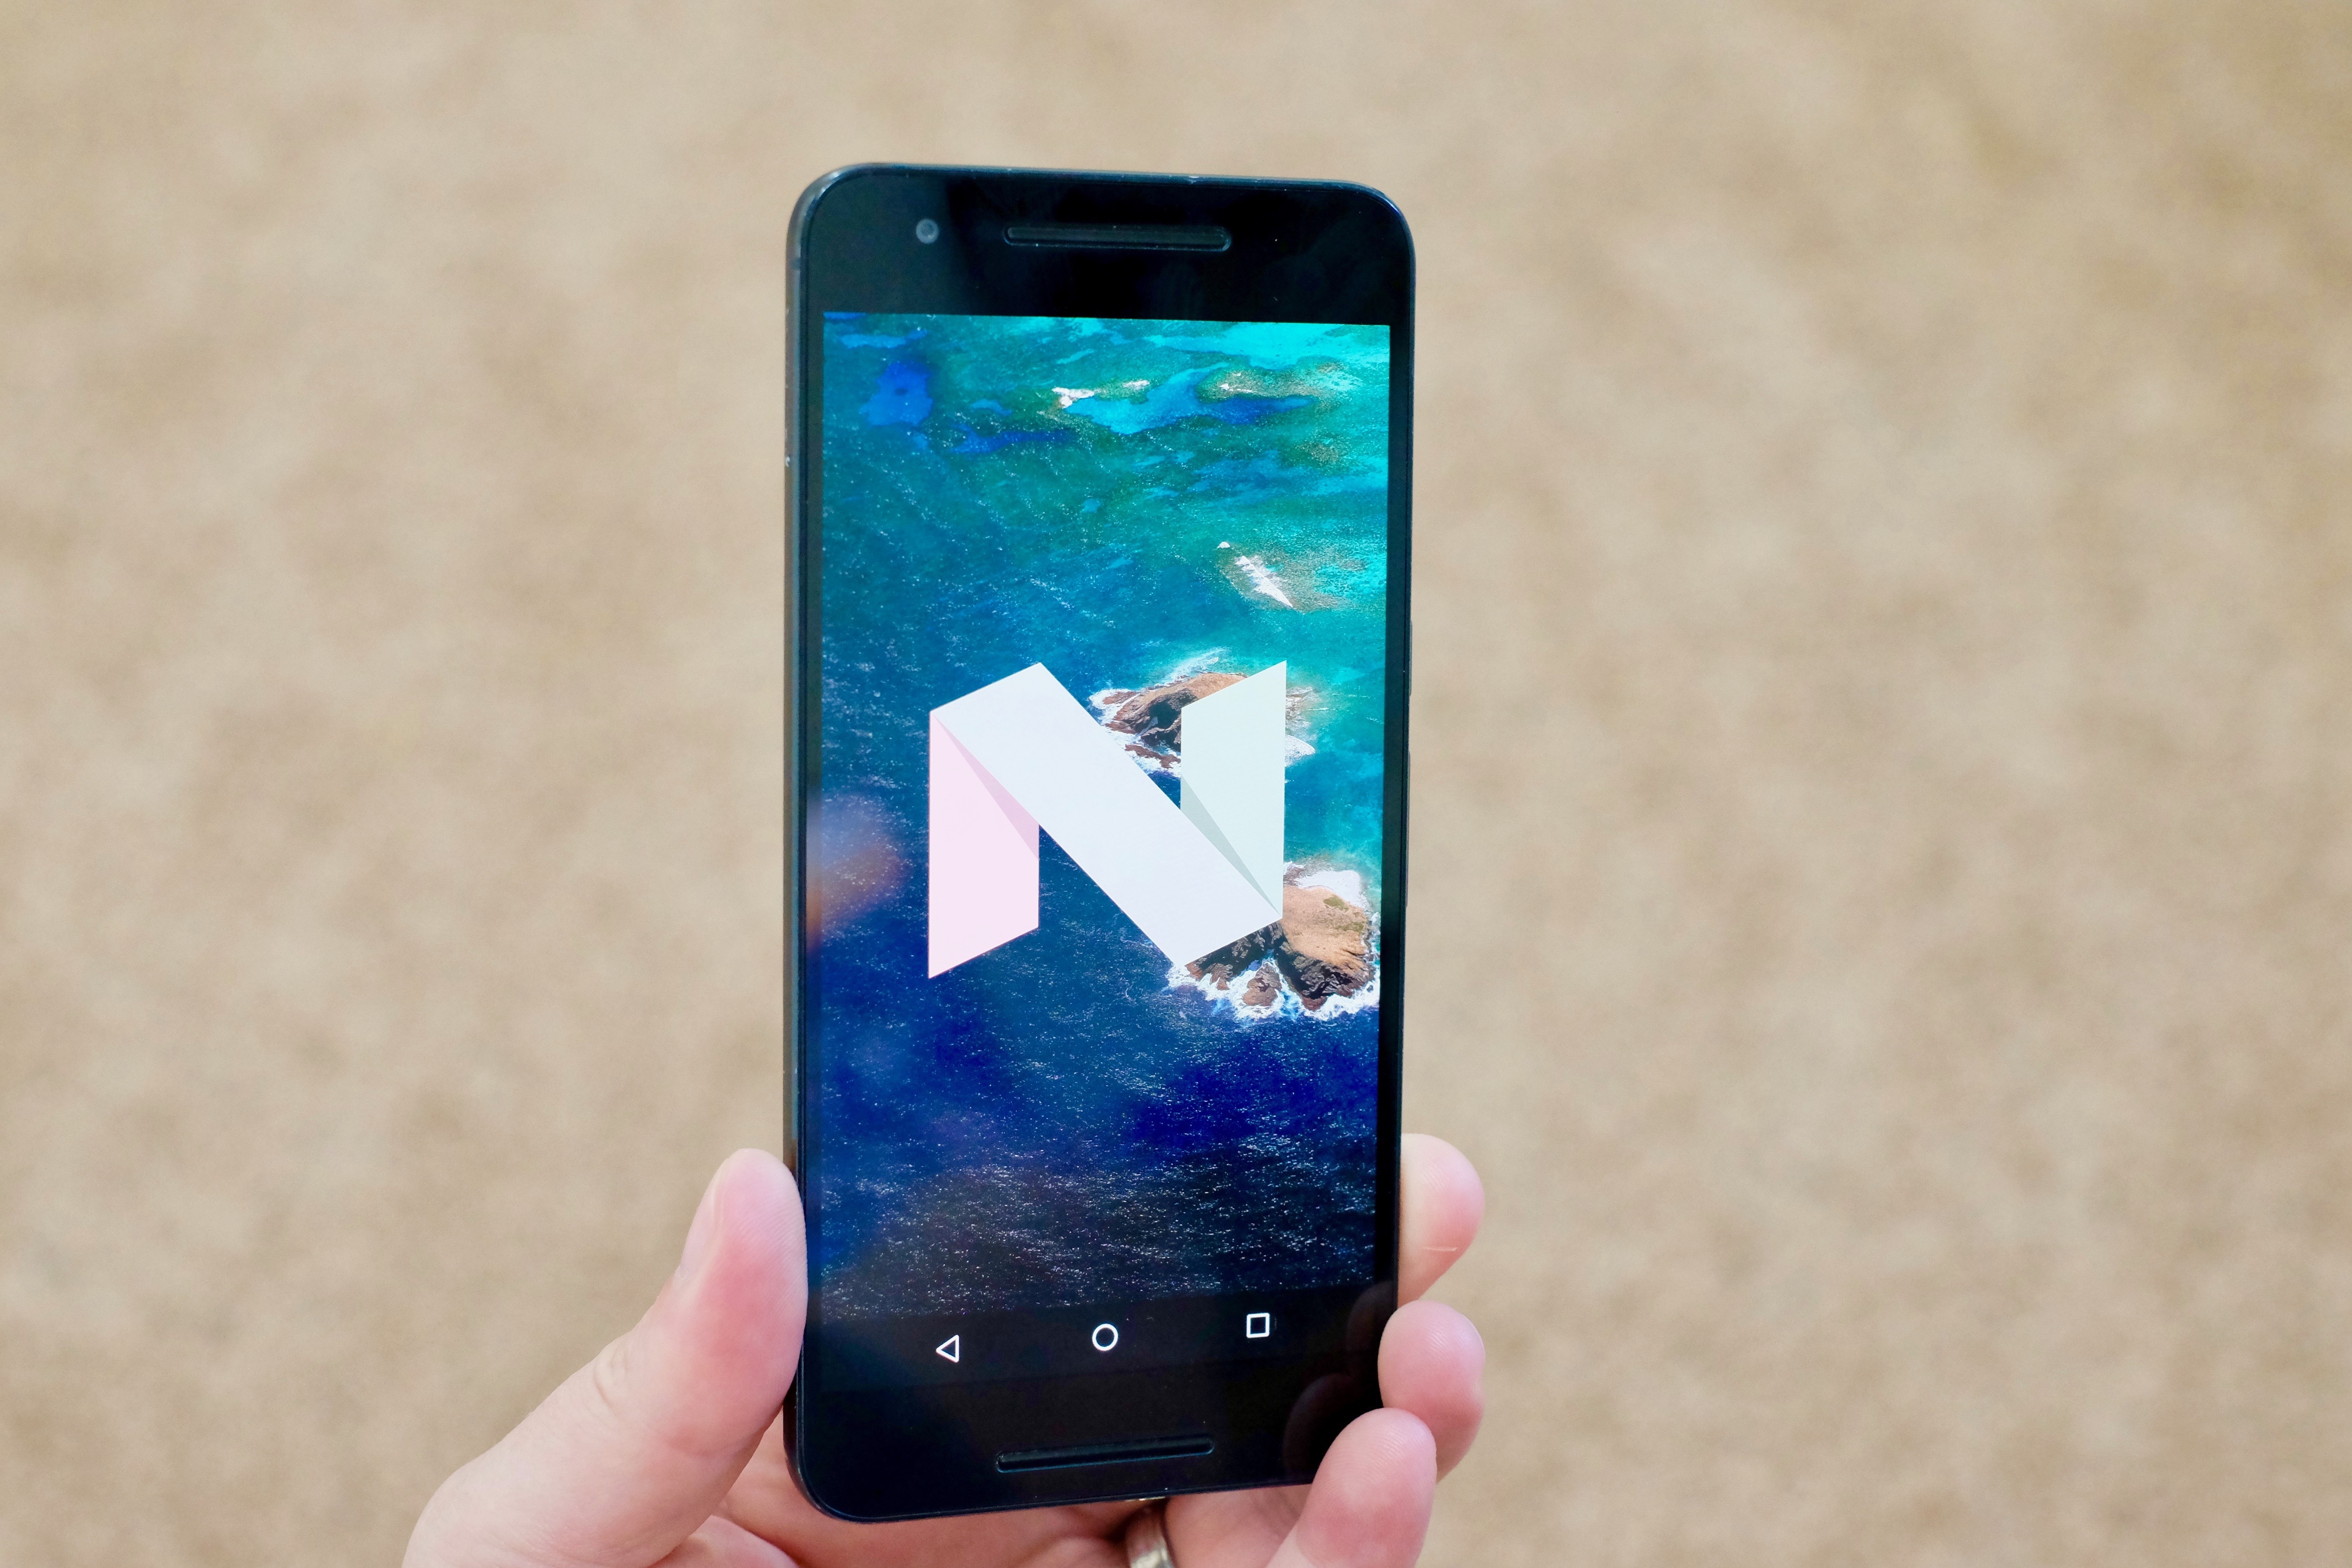 android 7.0 nougat wallpaper,mobiltelefon,gadget,smartphone,kommunikationsgerät,tragbares kommunikationsgerät